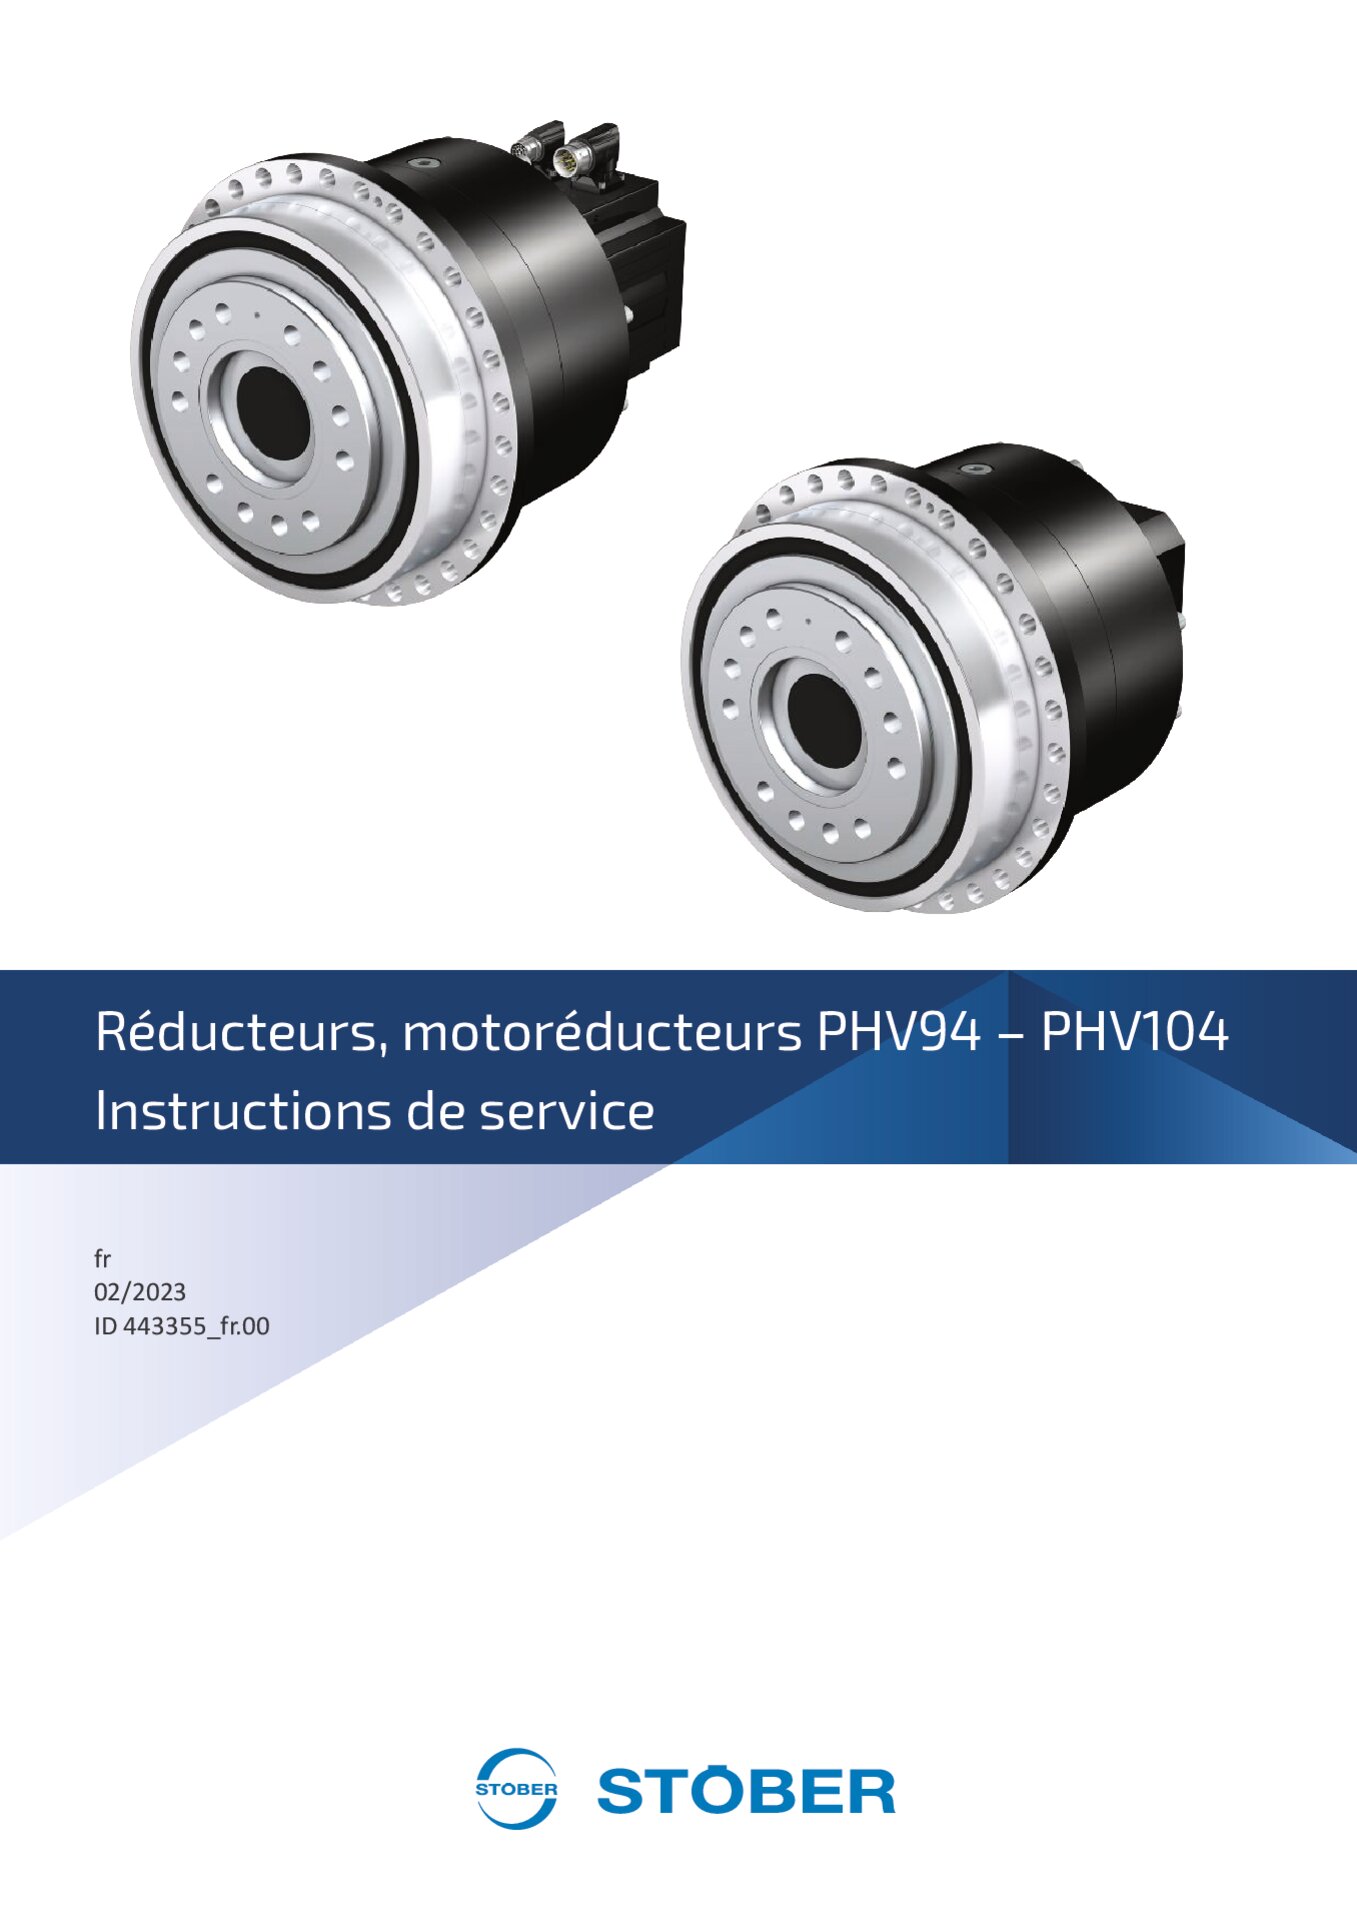 Instructions de service Réducteurs motoréducteurs PHV94-PHV104